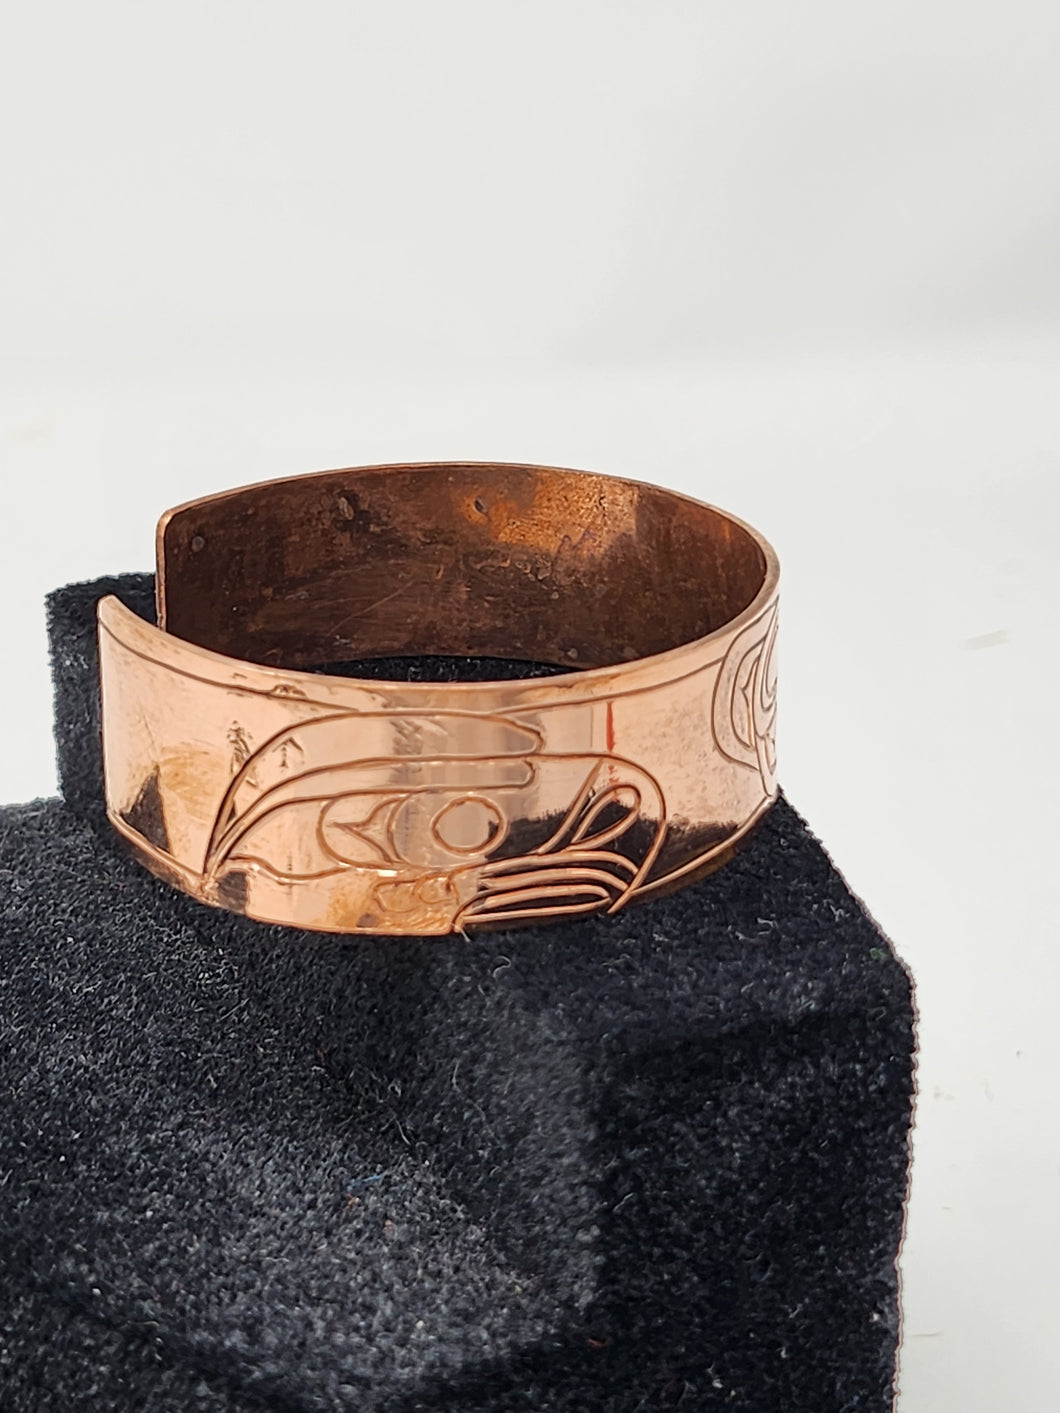 Eagle, Bear and Raven copper bracelet by Allen Wilson